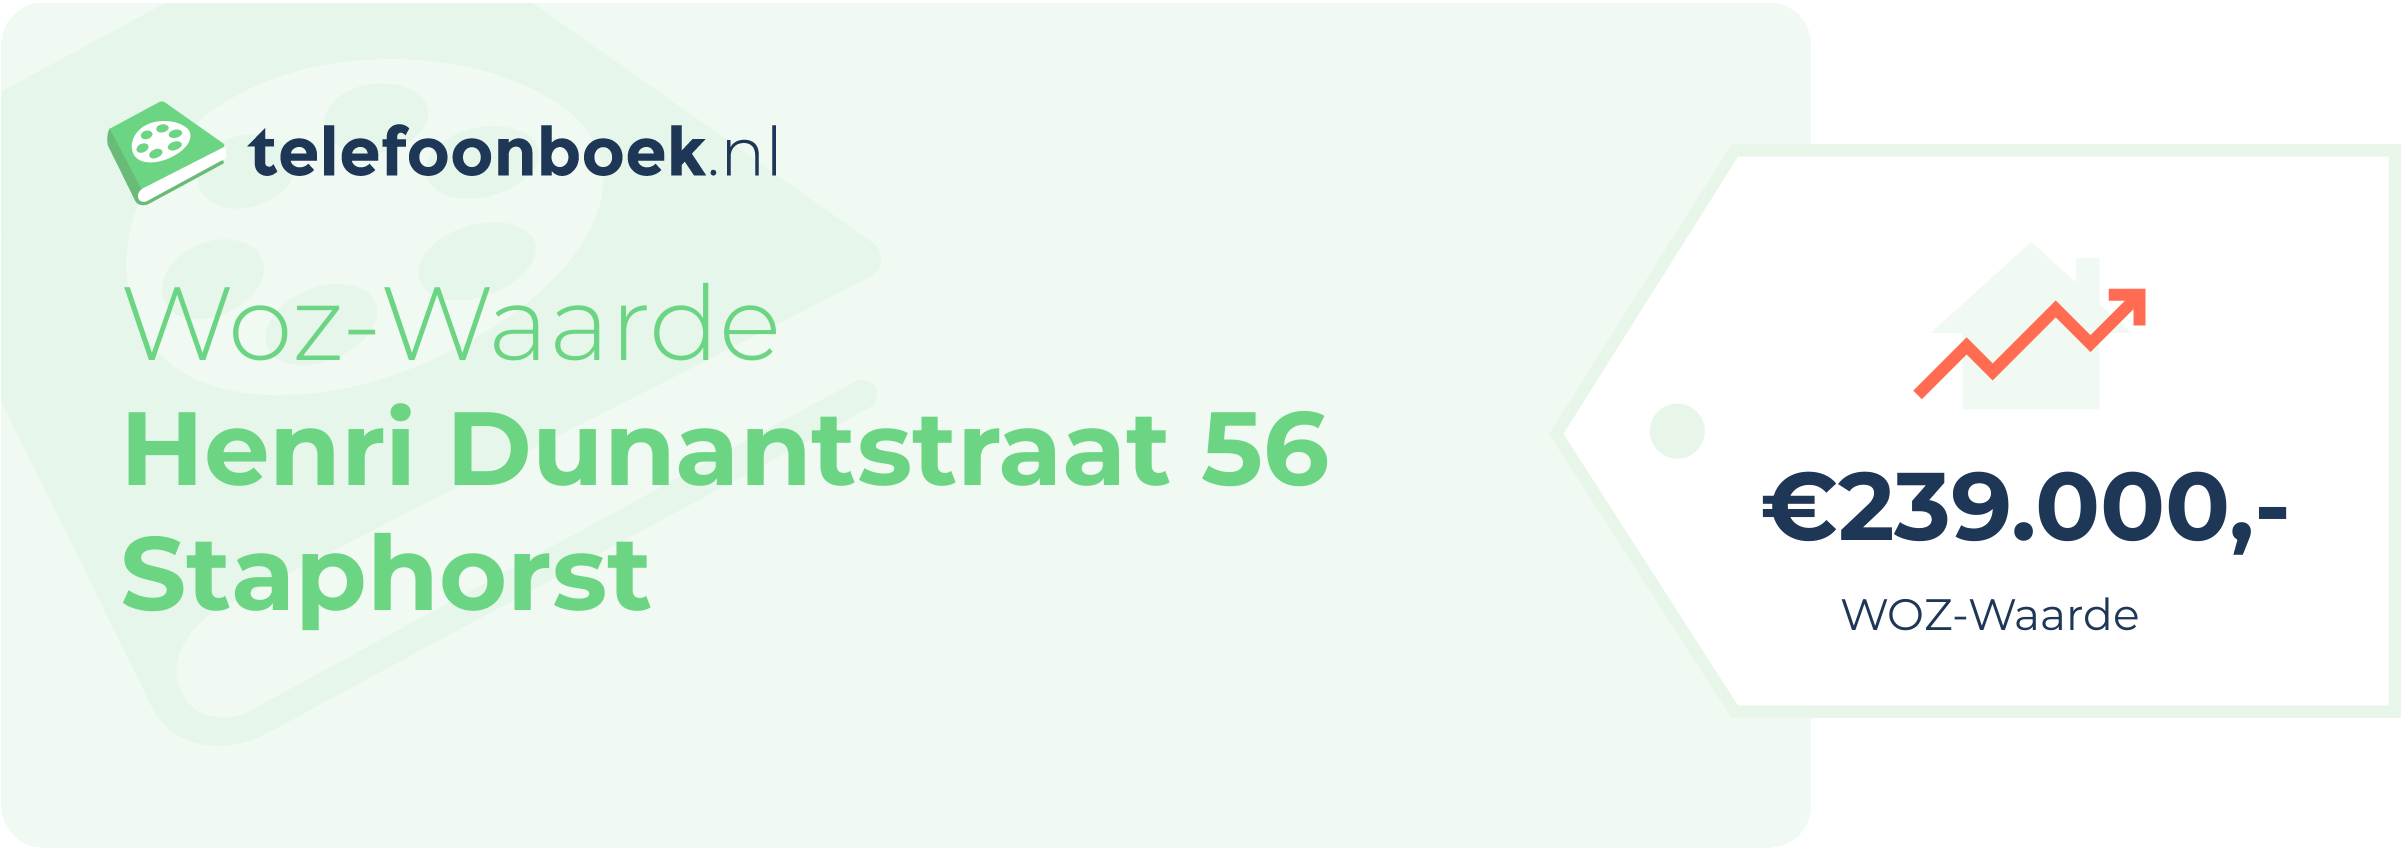 WOZ-waarde Henri Dunantstraat 56 Staphorst